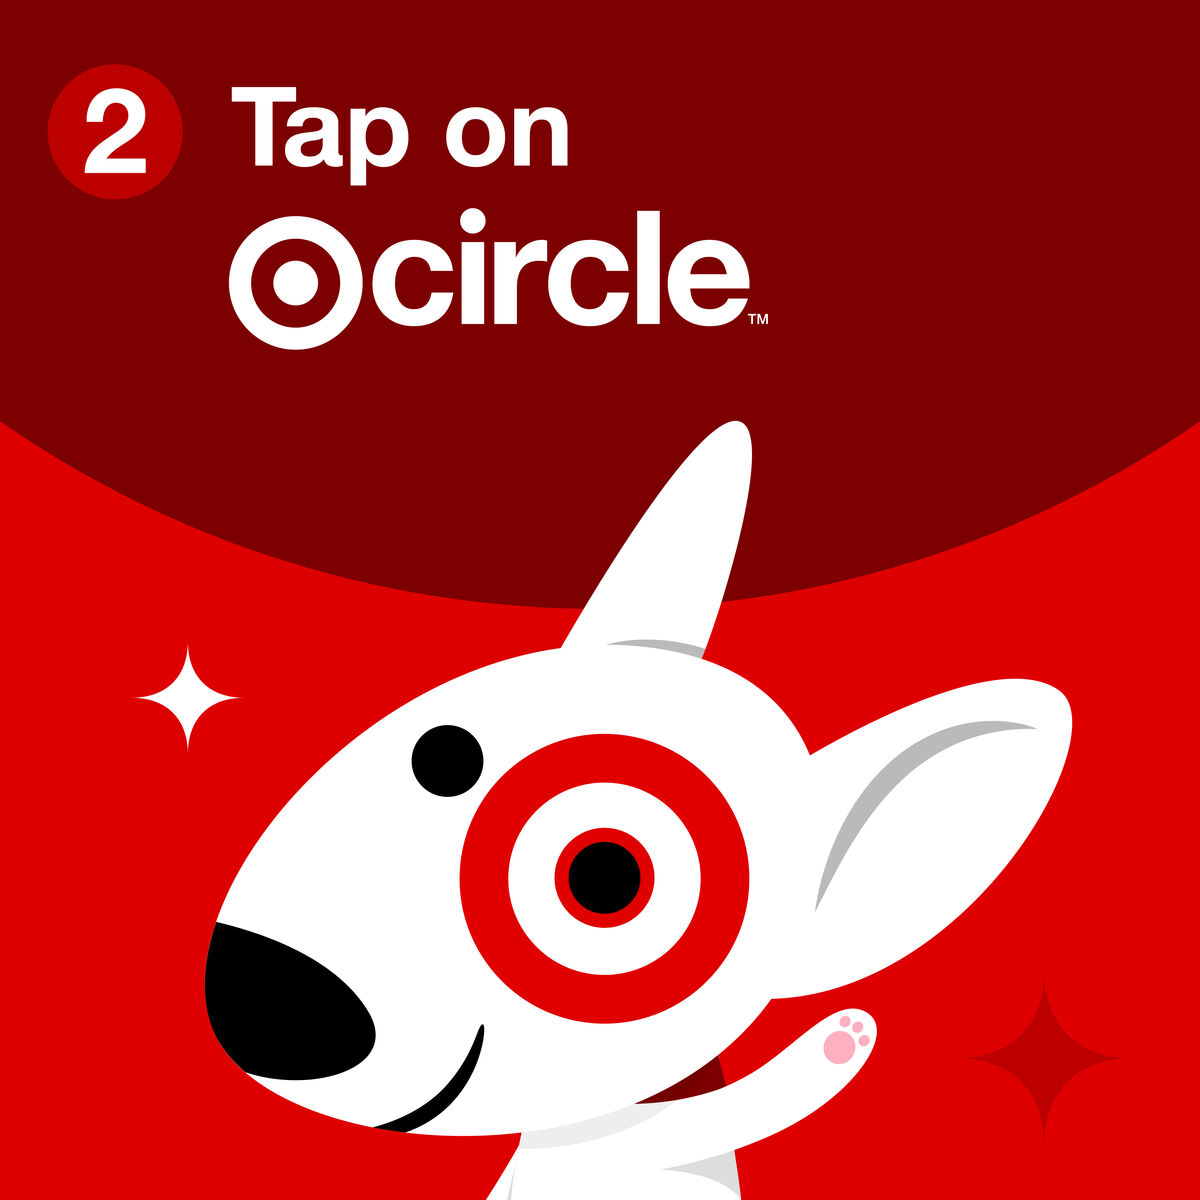 Step 2, tap on target circle